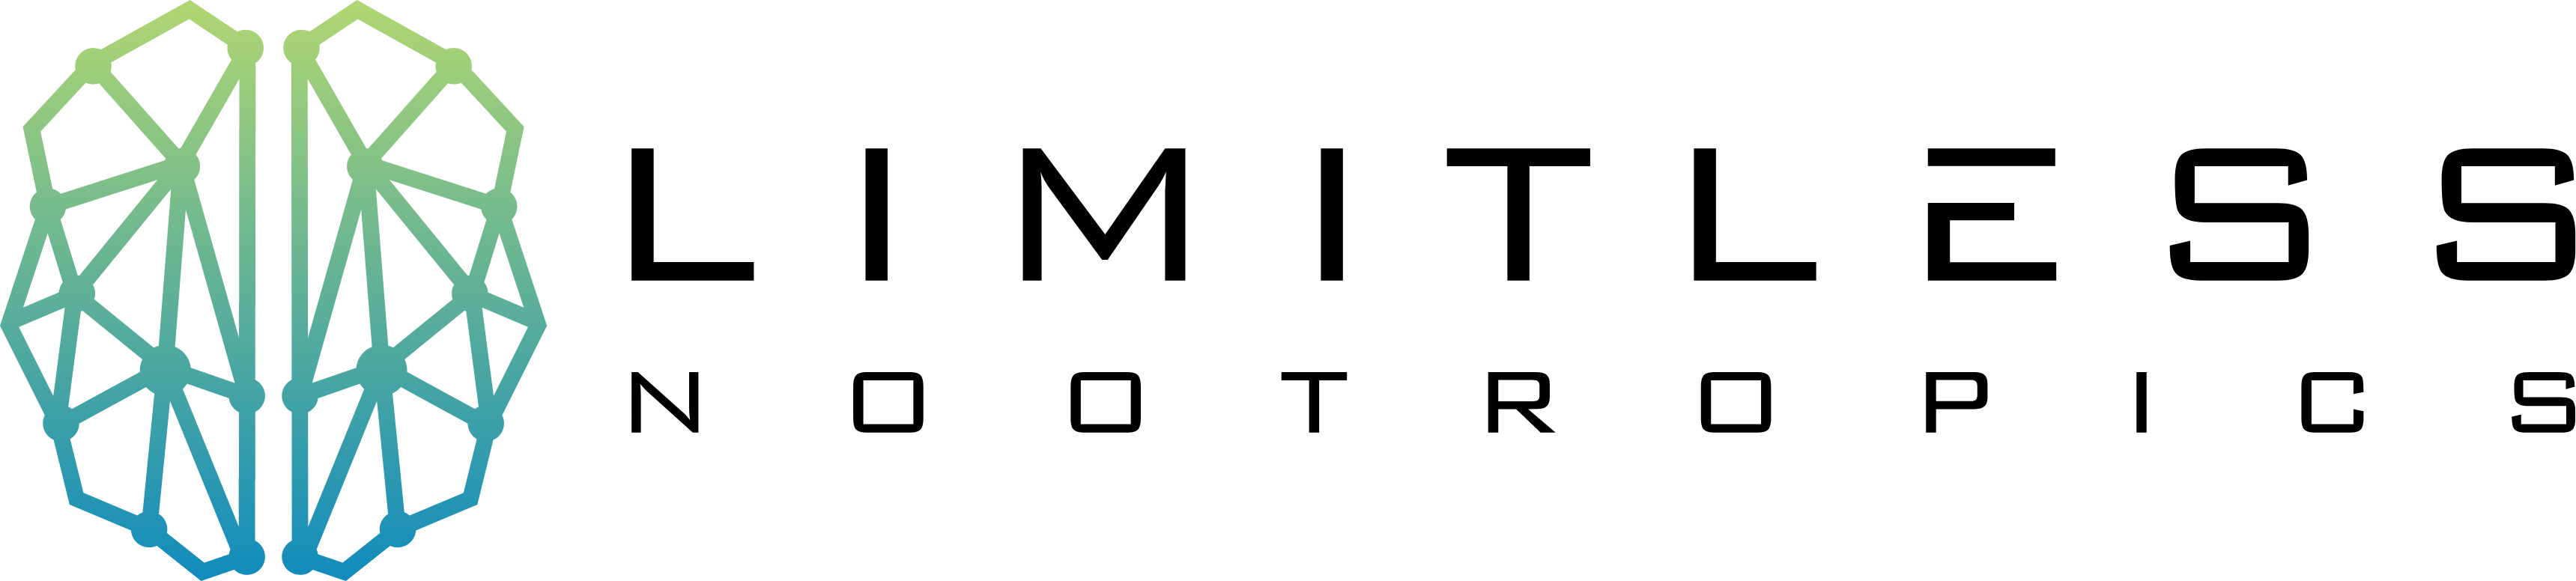 Limitless Nootropics Logo Black